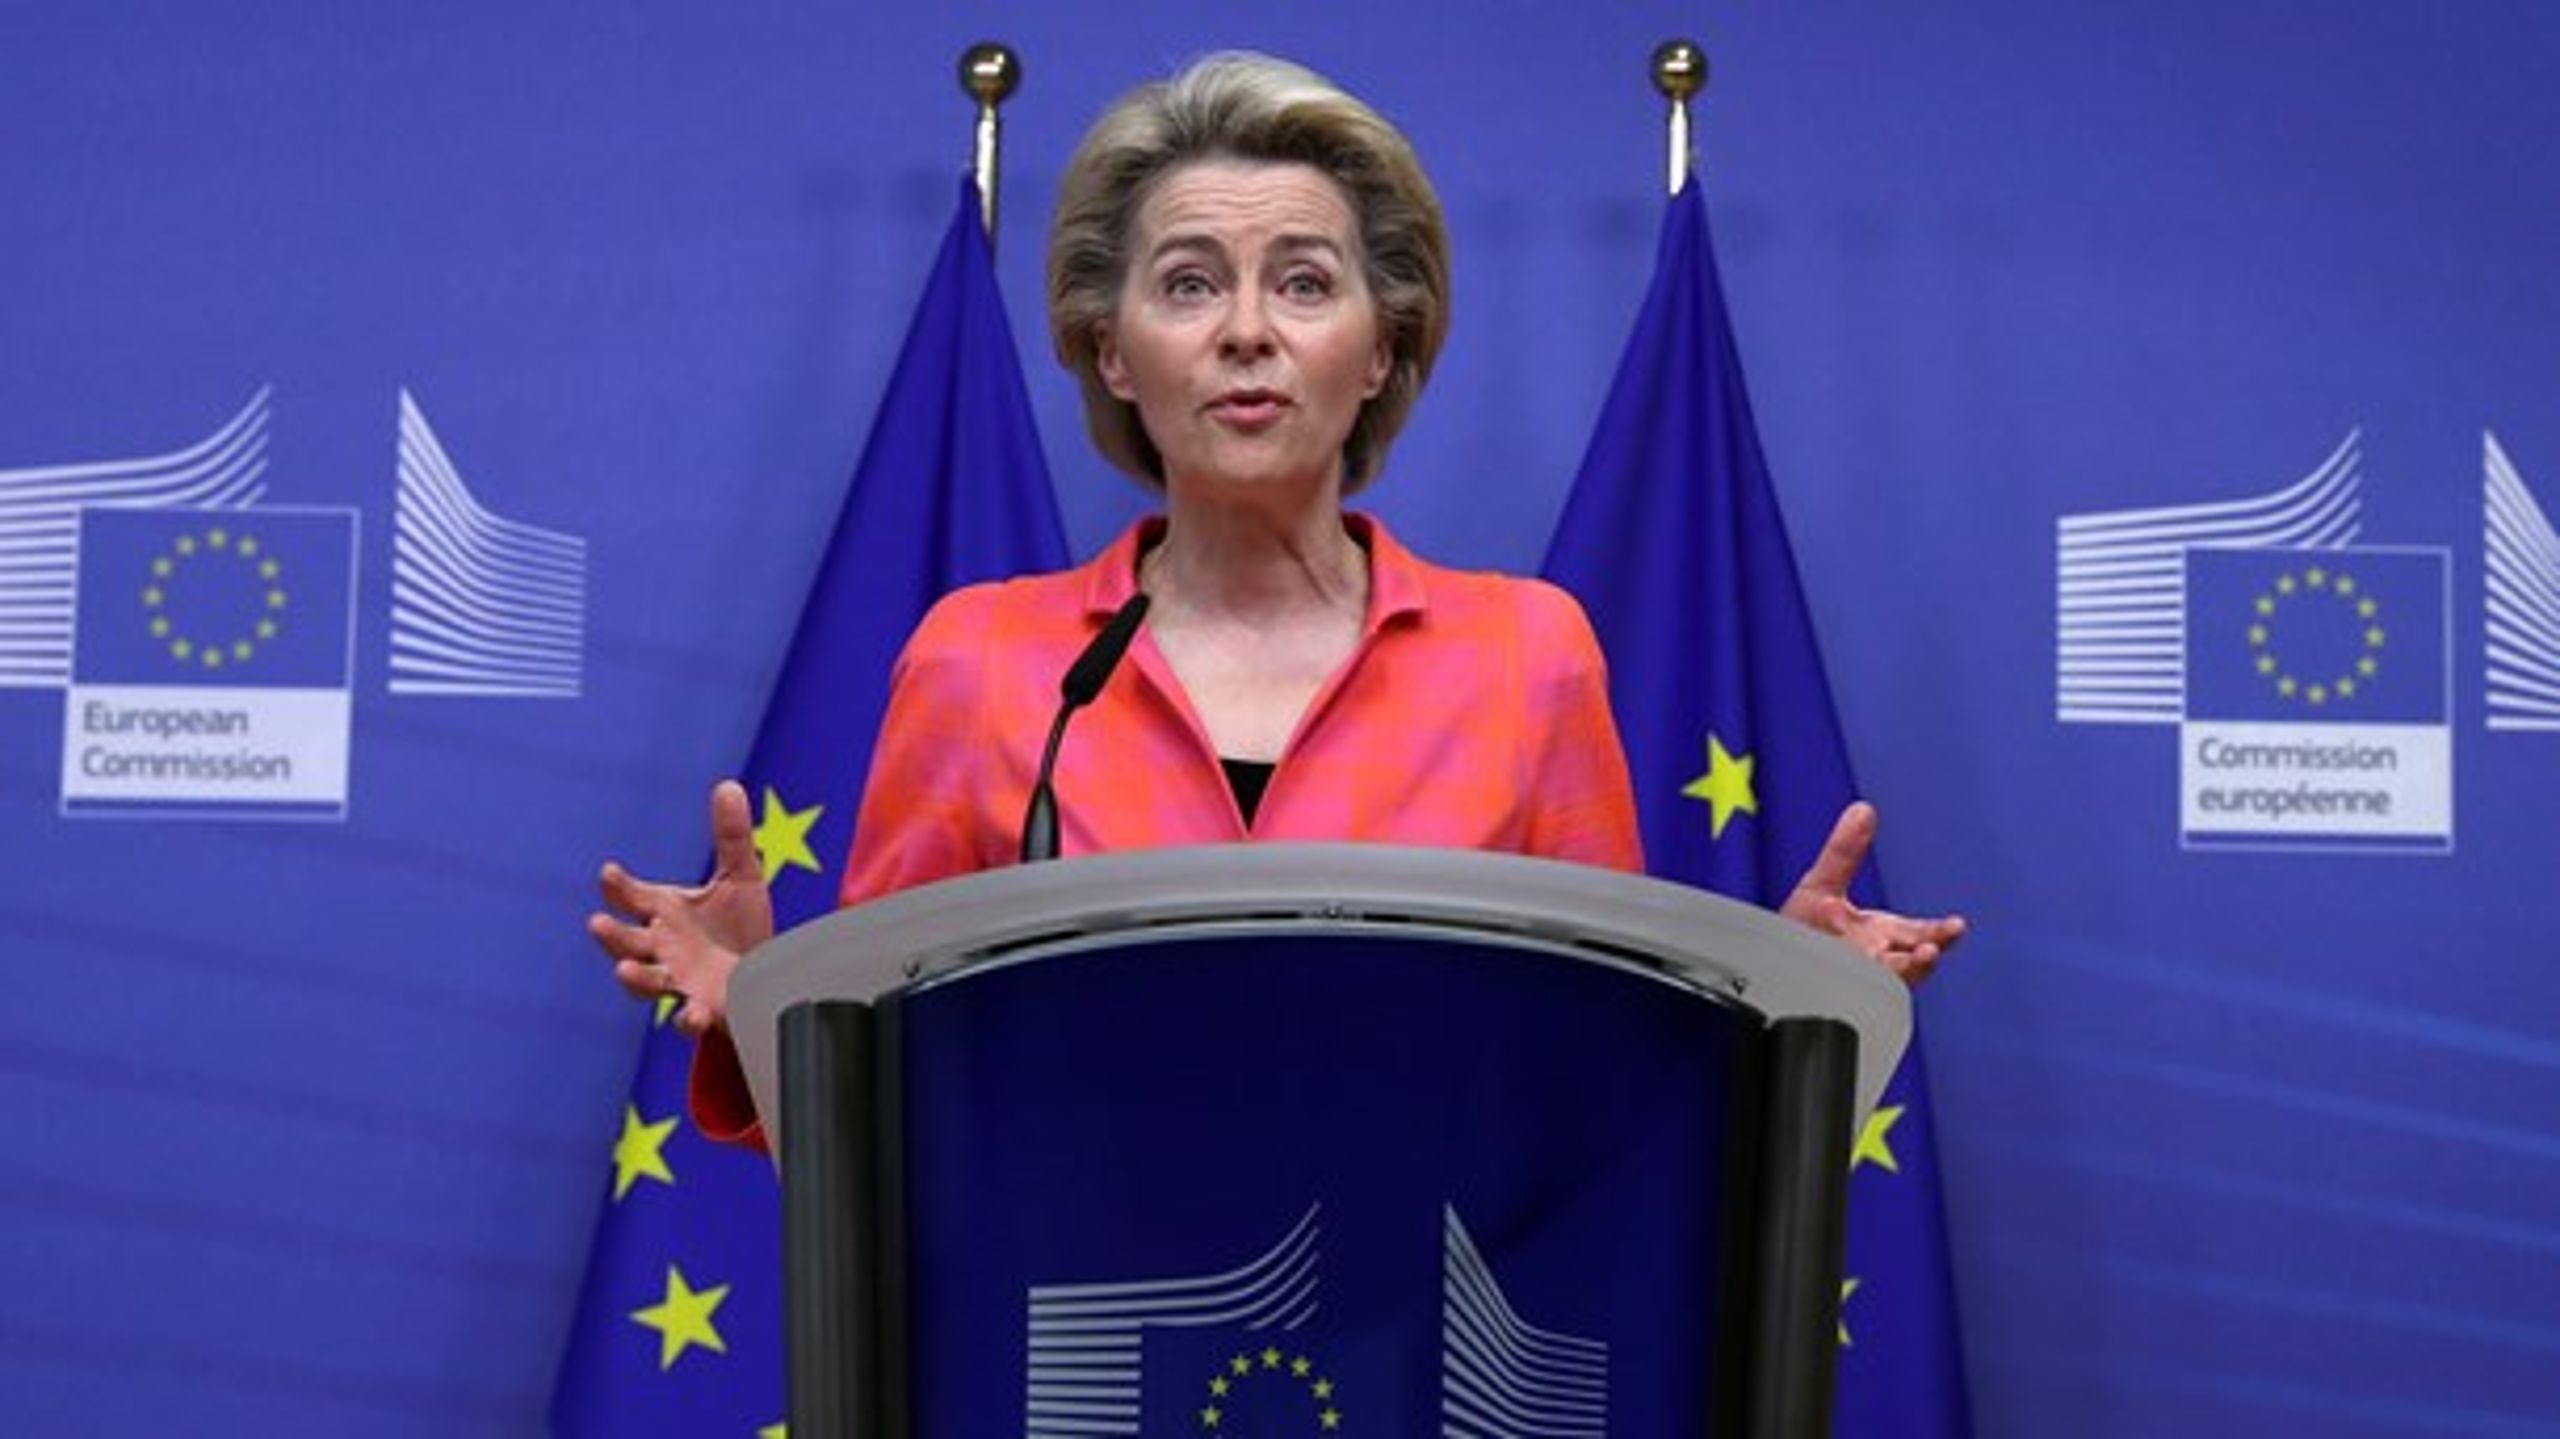 Det är&nbsp;avgörande att EU-kommissionen och Ursula von der Leyen har satt klimatet högst på agendan. Målet är att EU ska nå klimatneutralitet till 2050, skriver debattörerna.&nbsp;